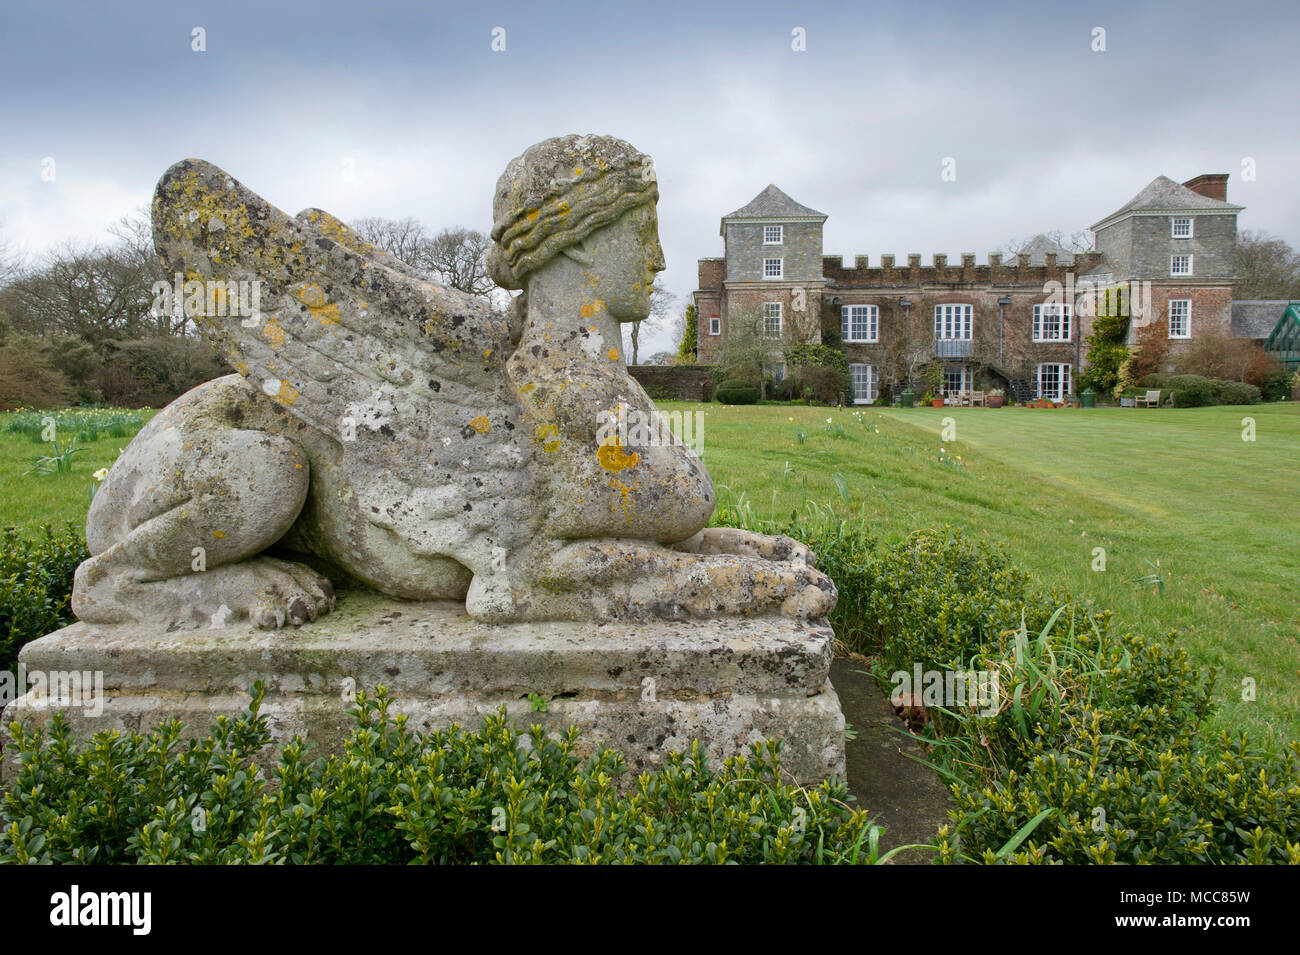 Lord et Lady Boyd (Simon & Alice Boyd) Château de Ince,Yorkshire,Cornwall,UK,montrant la folie shellhouse sphinx,Ornement de jardin,salon etc. Banque D'Images